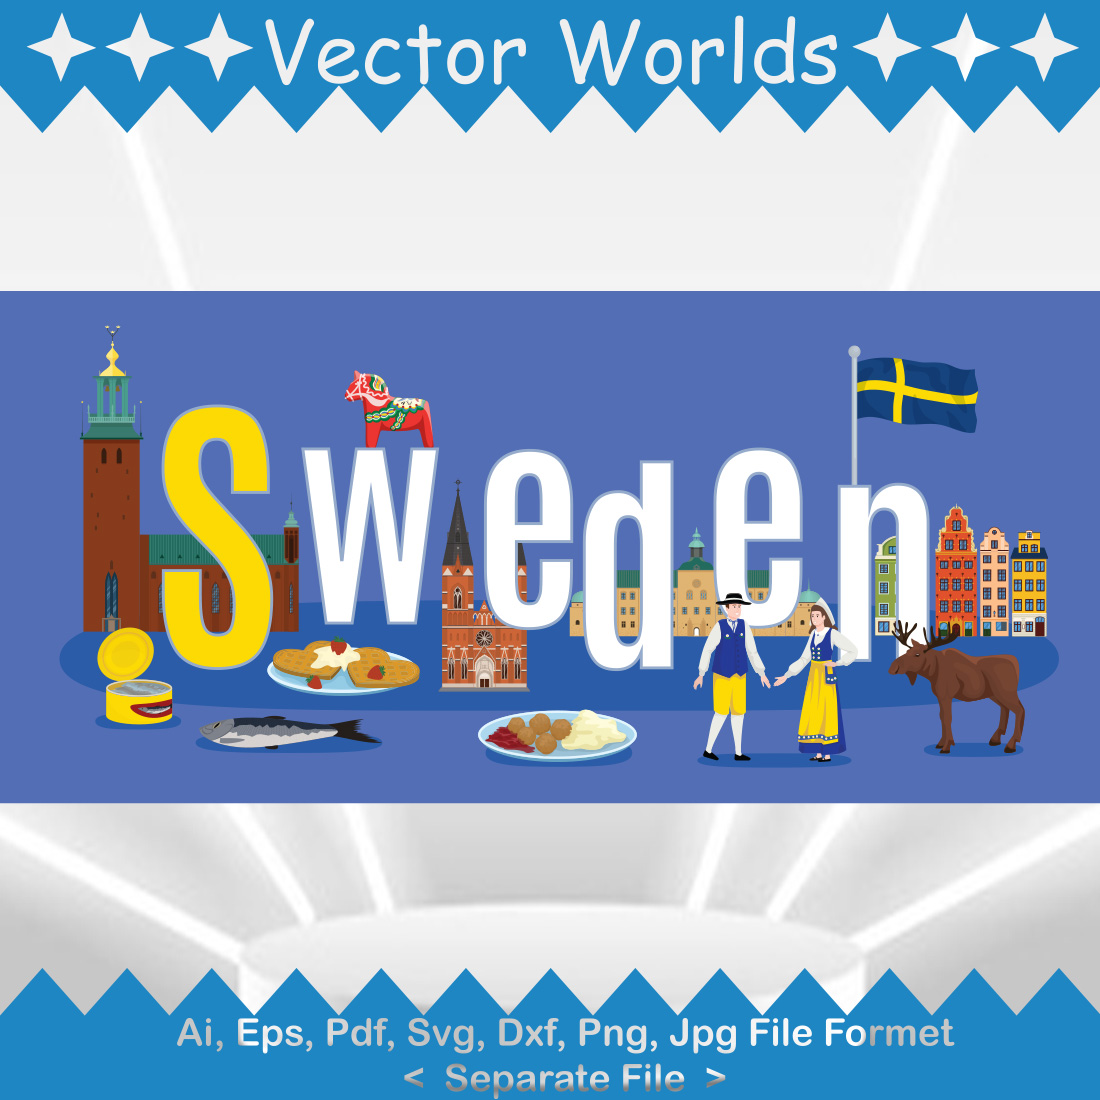 Sweden SVG Vector Design cover image.